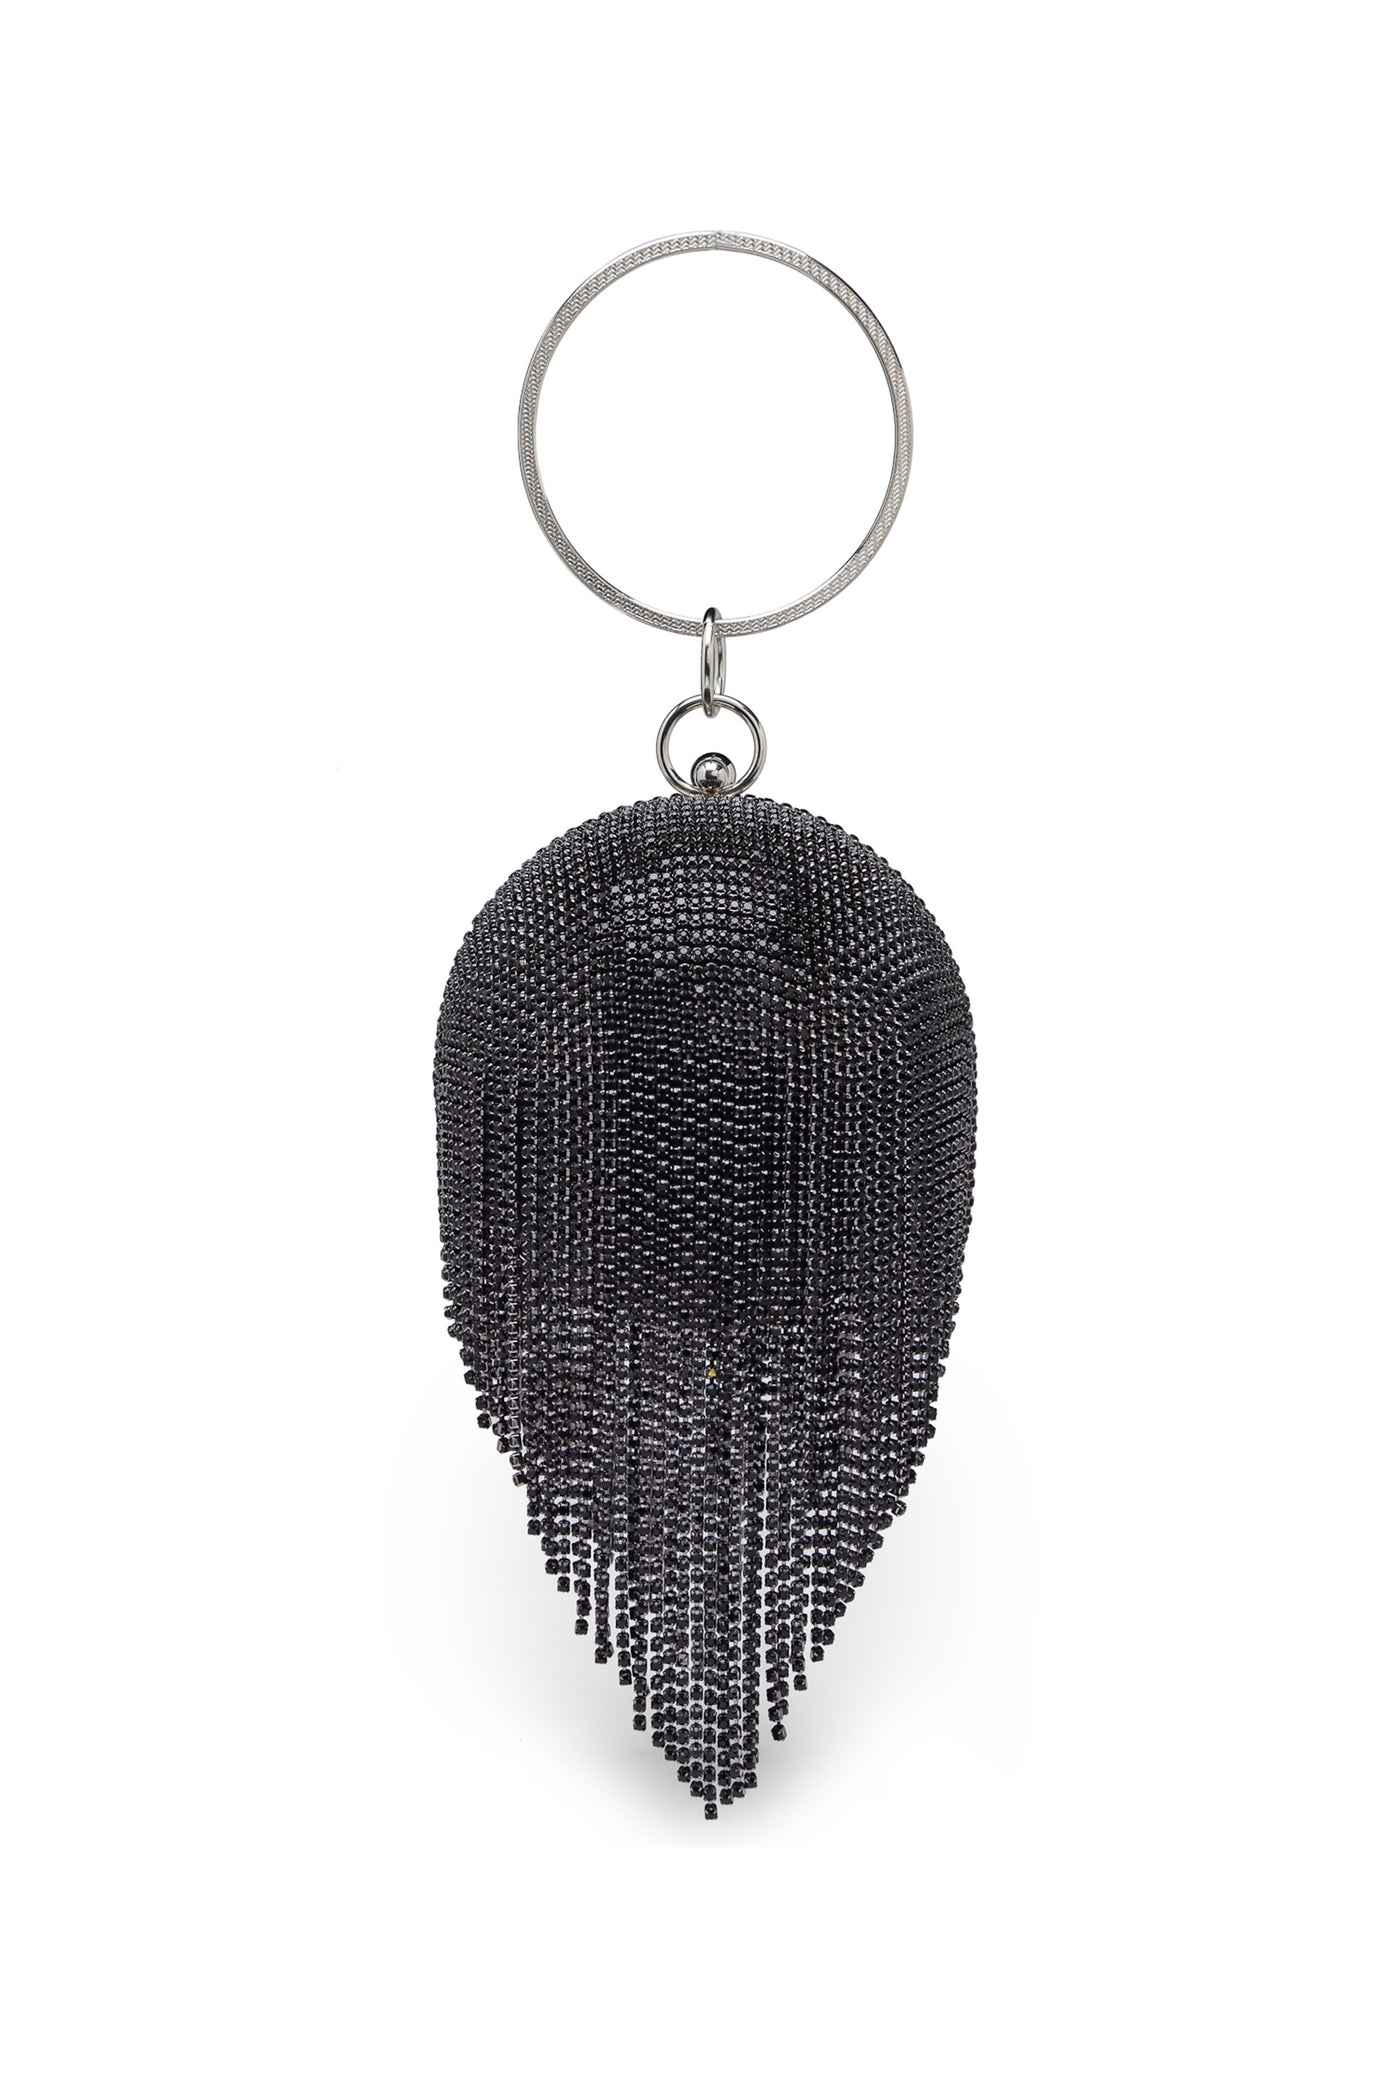 Bijoux by priya chandna disco ball black fashion accessories indian designer wear online shopping melange singapore